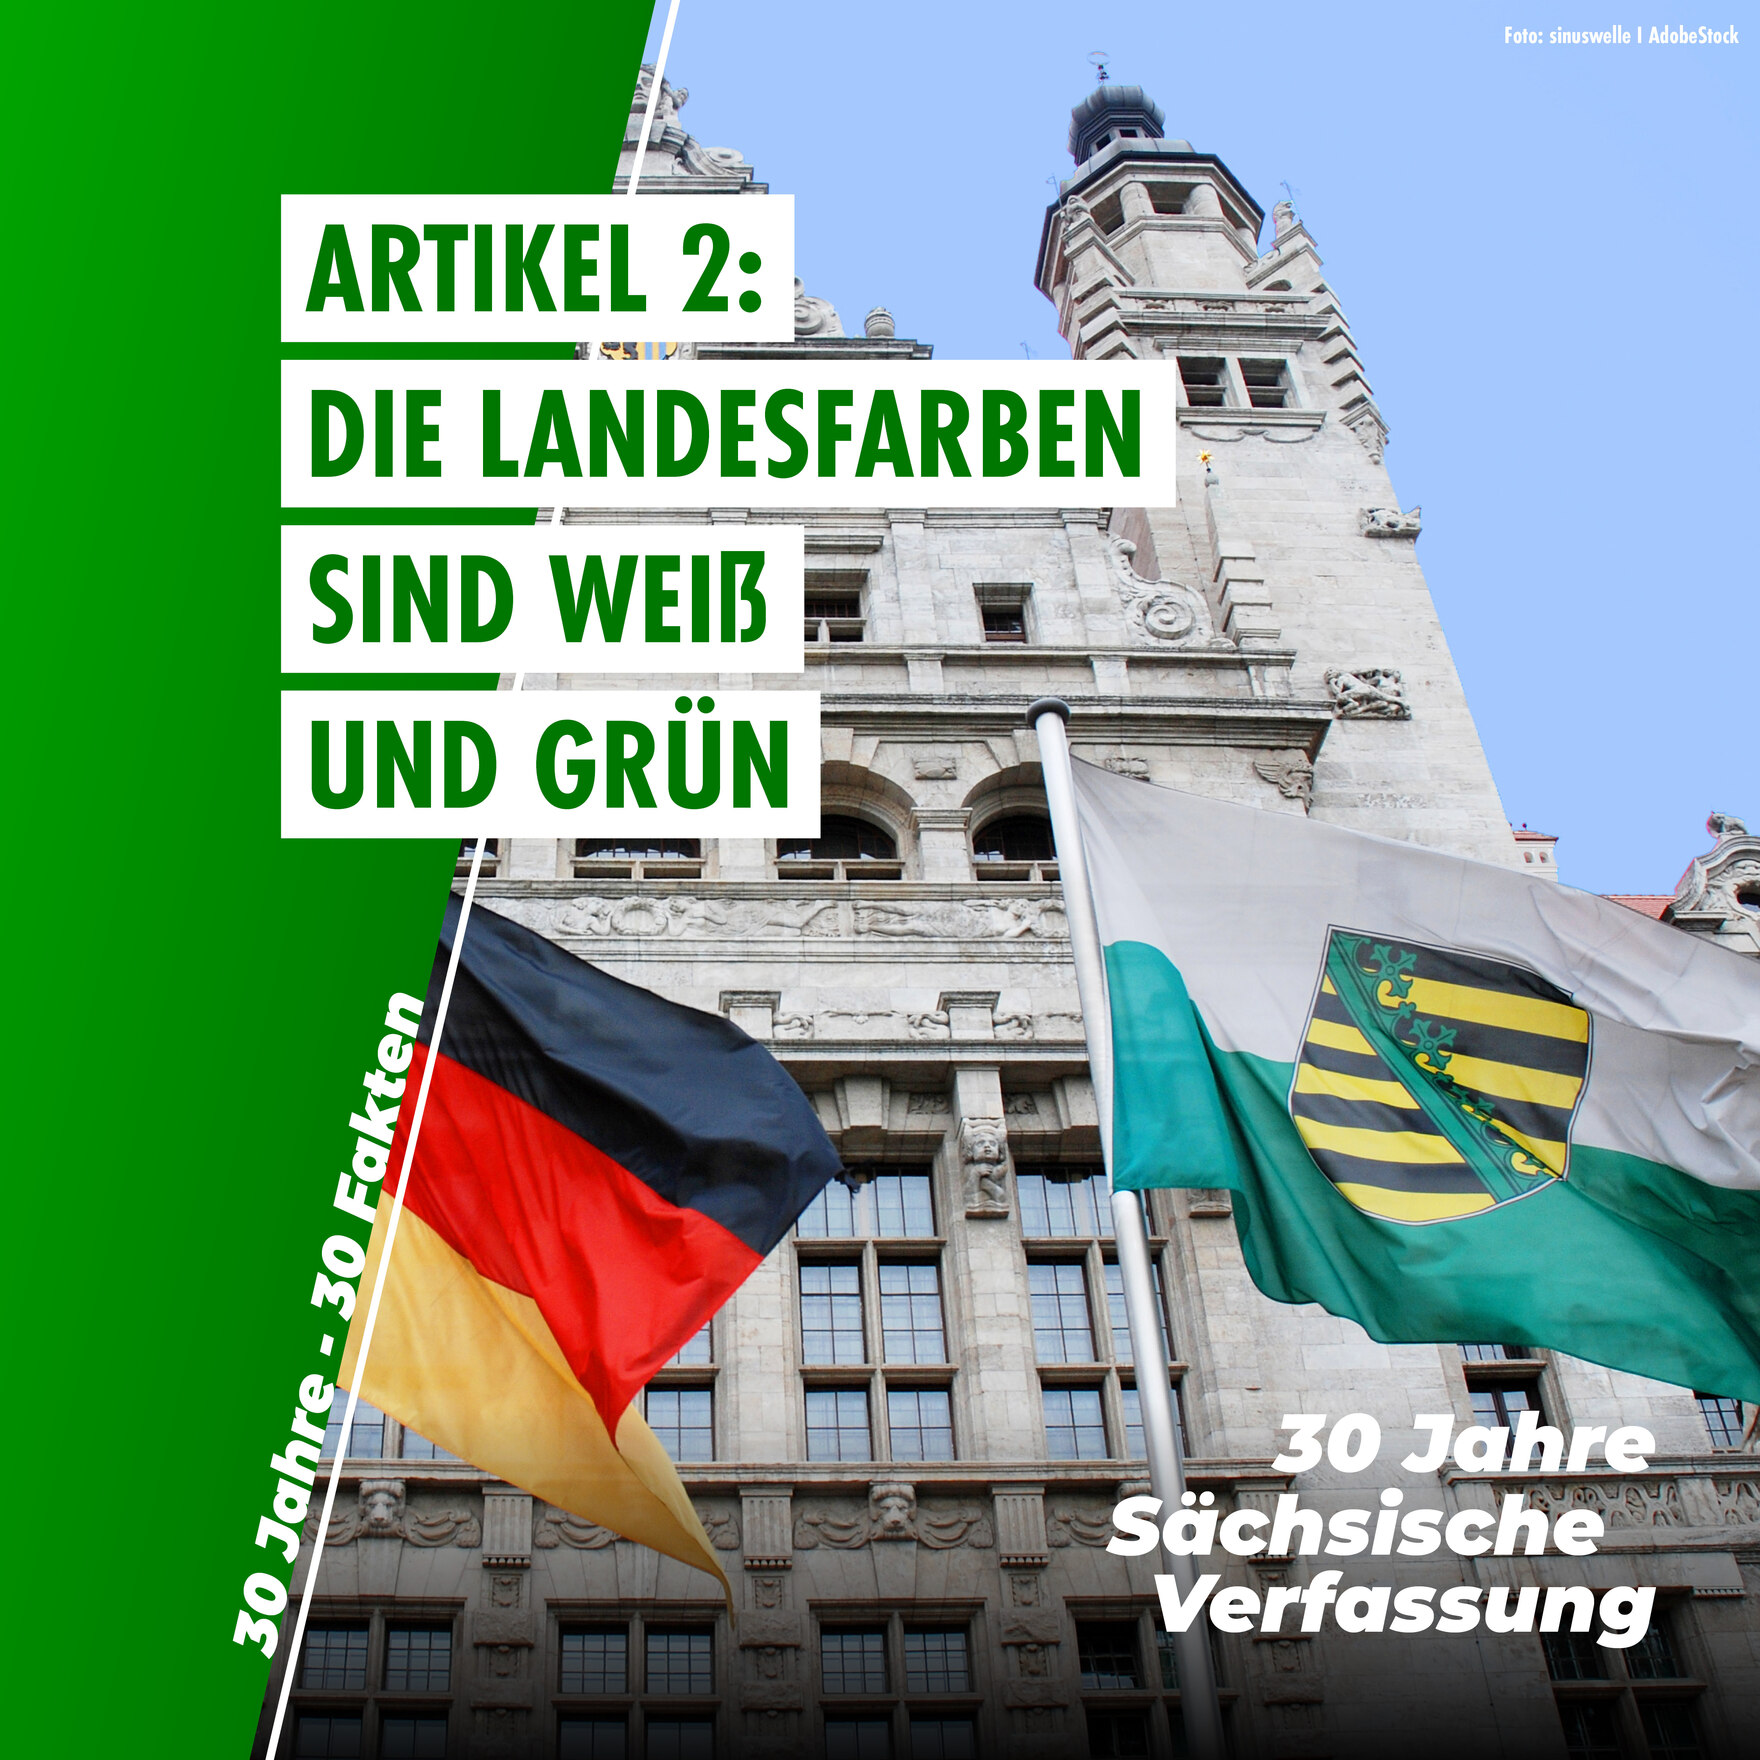 Sächsische und deutsche Flagge wehen vor dem burgähnlichen Gebäude des Leipziger Rathauses. Auf dem Bild steht "Artikel 2: Die Landesfarben sind weiß und grün"